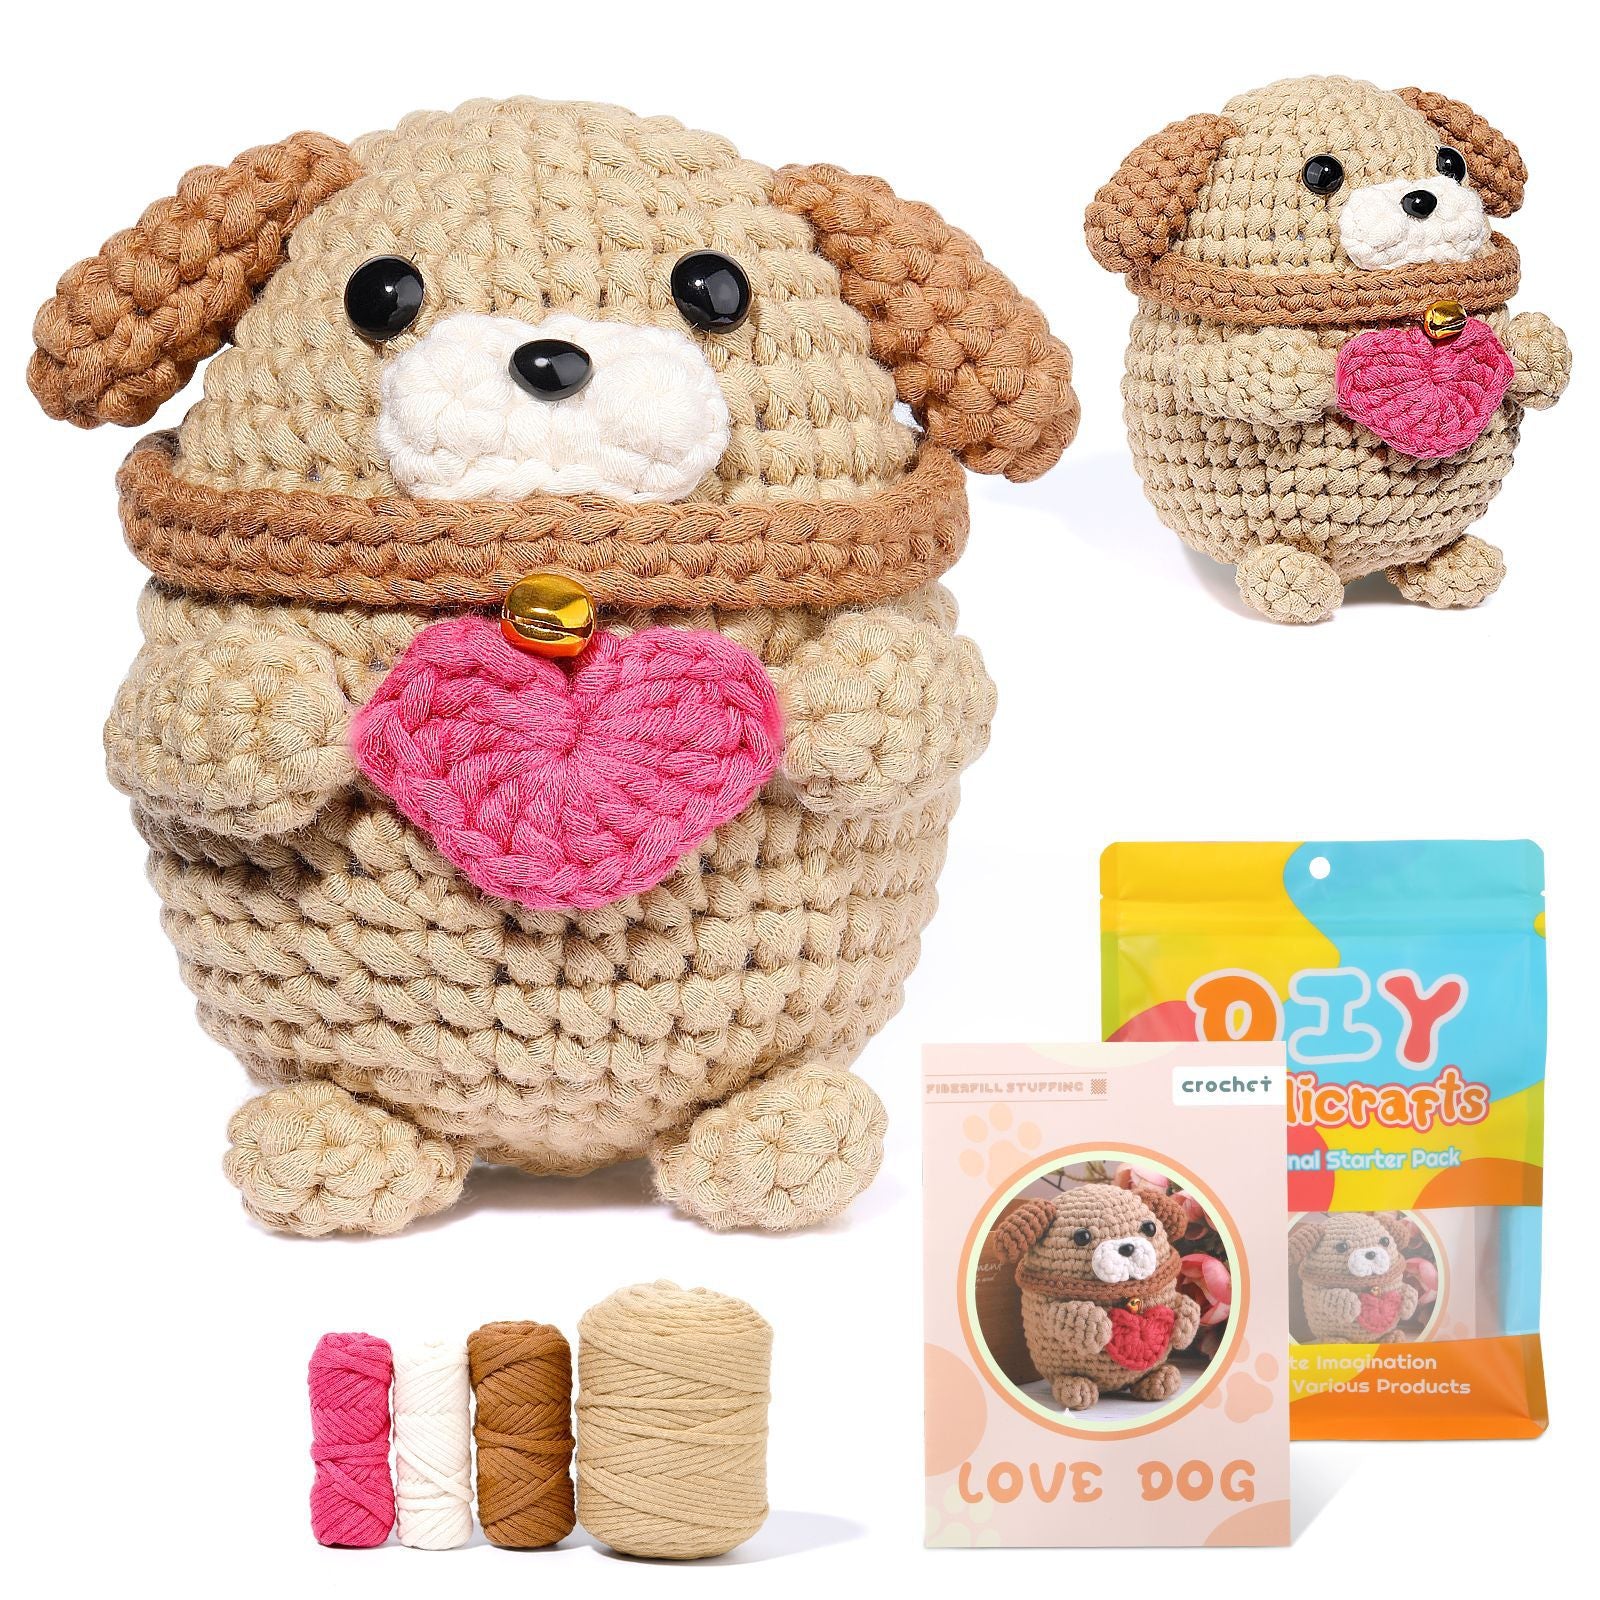 Heart of Dog Puppy Crochet Kit for Beginners